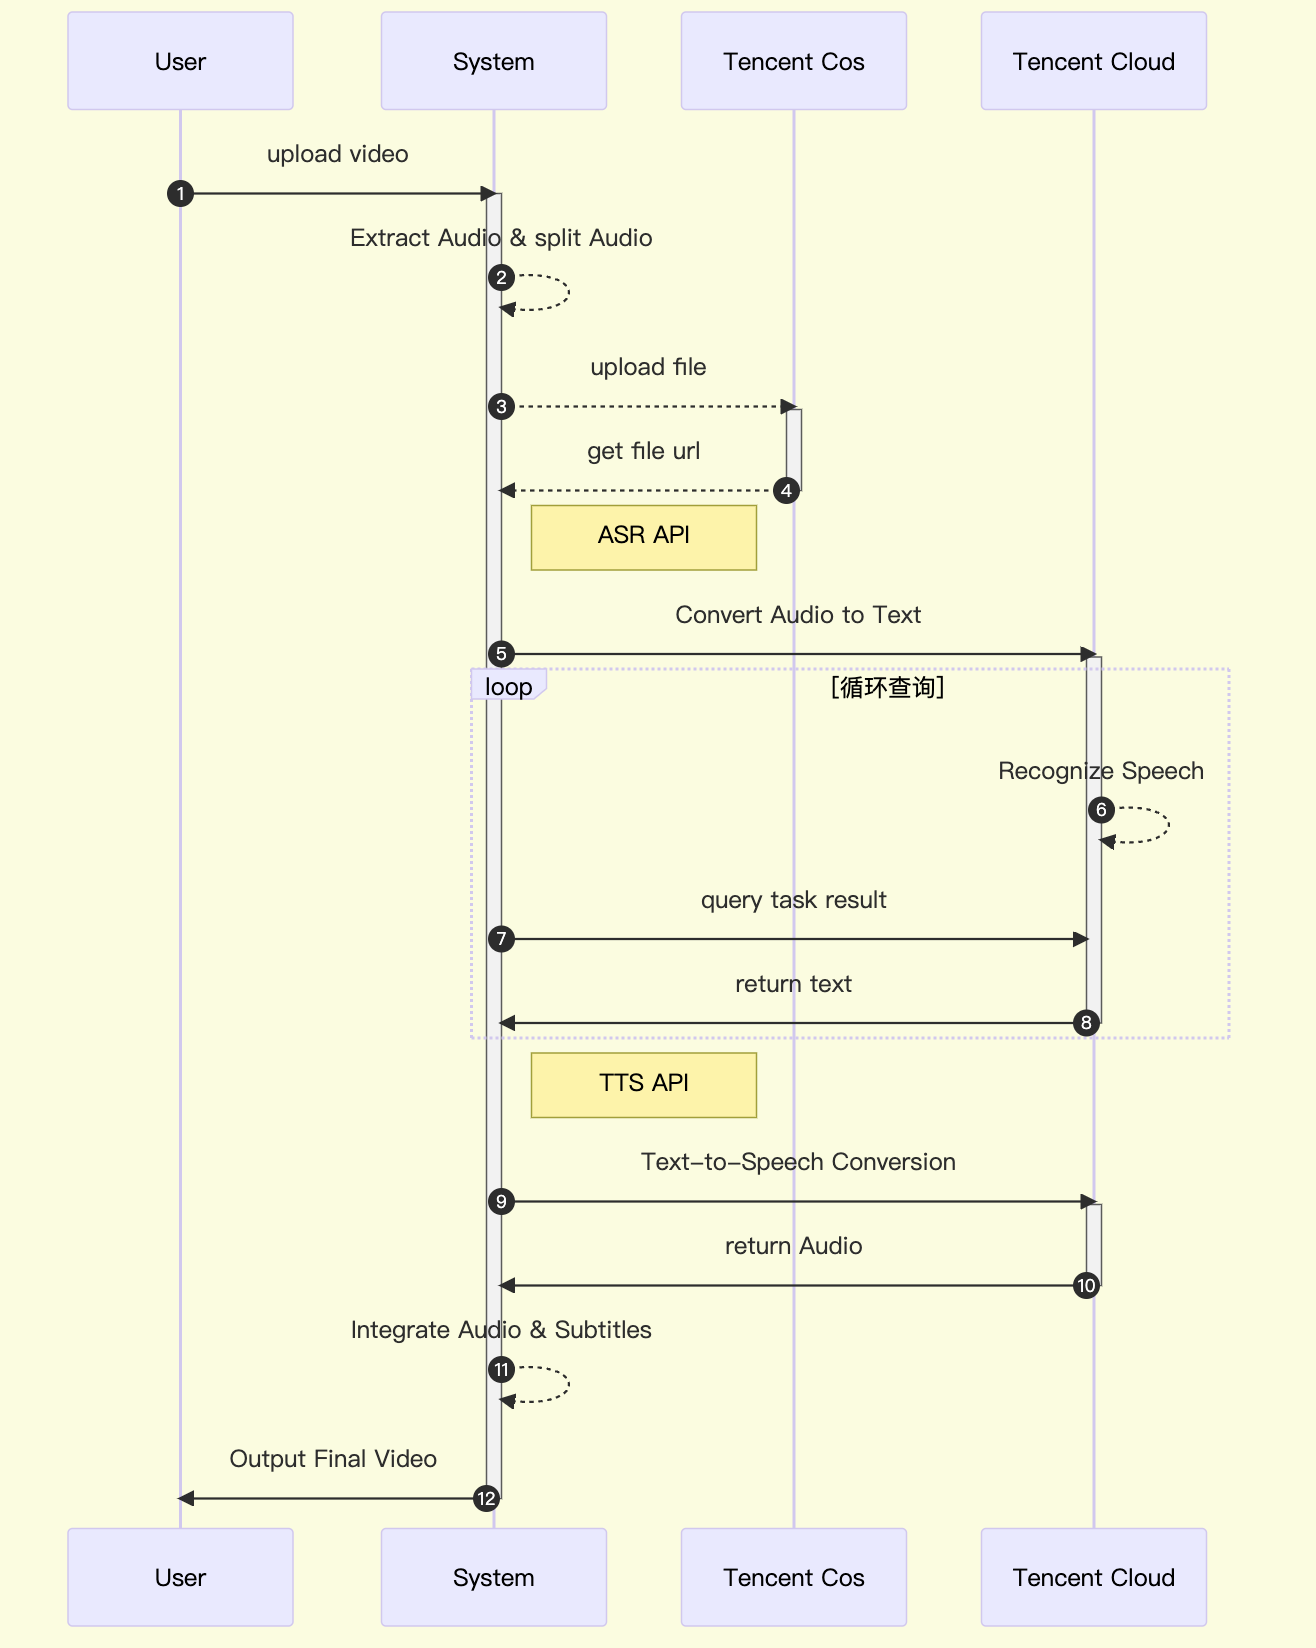 图 3. 系统时序图